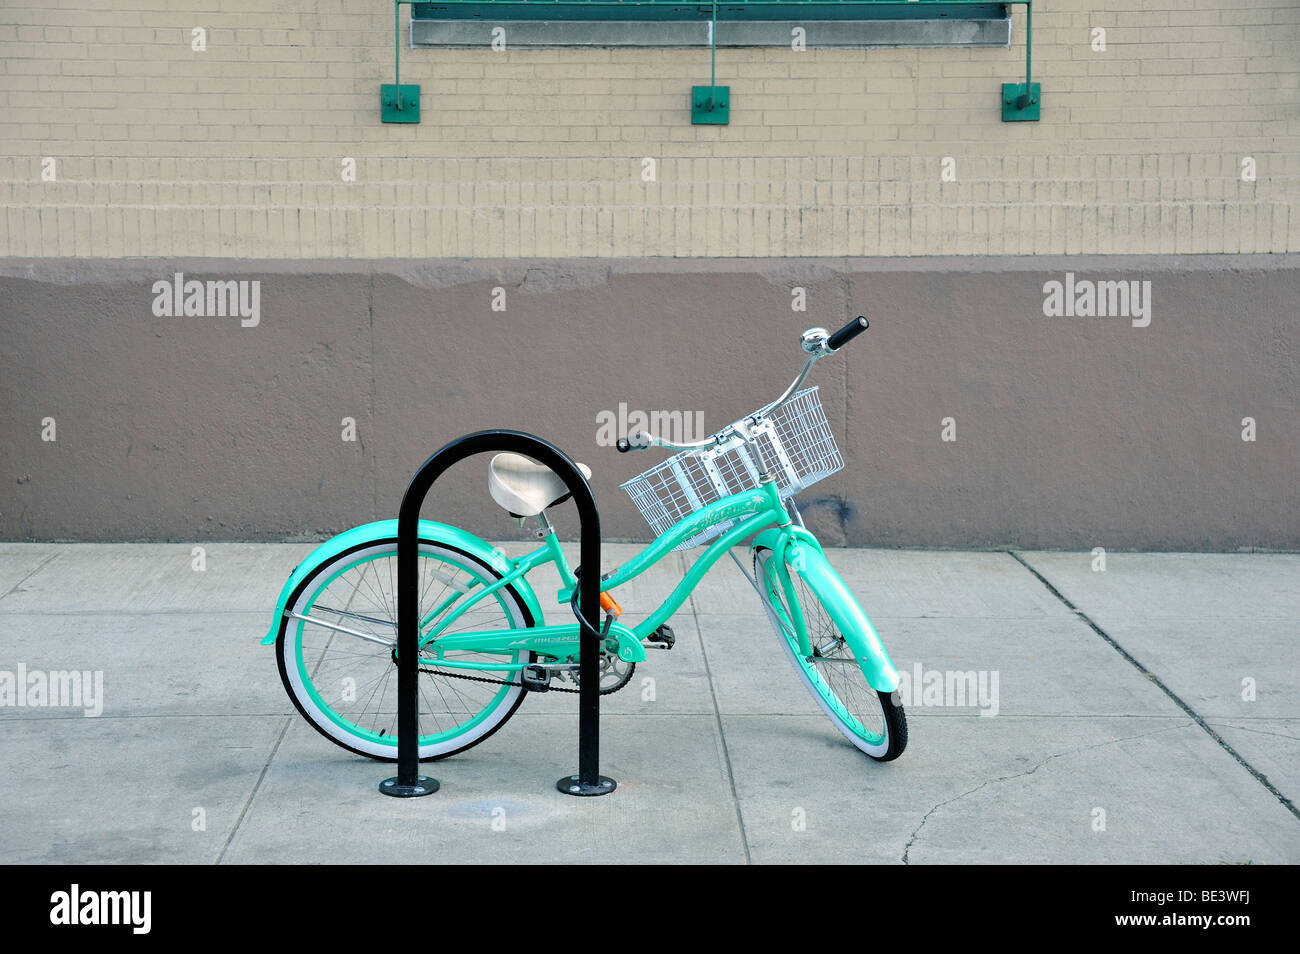 Un cadre ouvert vert turquoise Beach Cruiser vélo style avec un panier sur le guidon, verrouillé sur un vélo à New York Banque D'Images